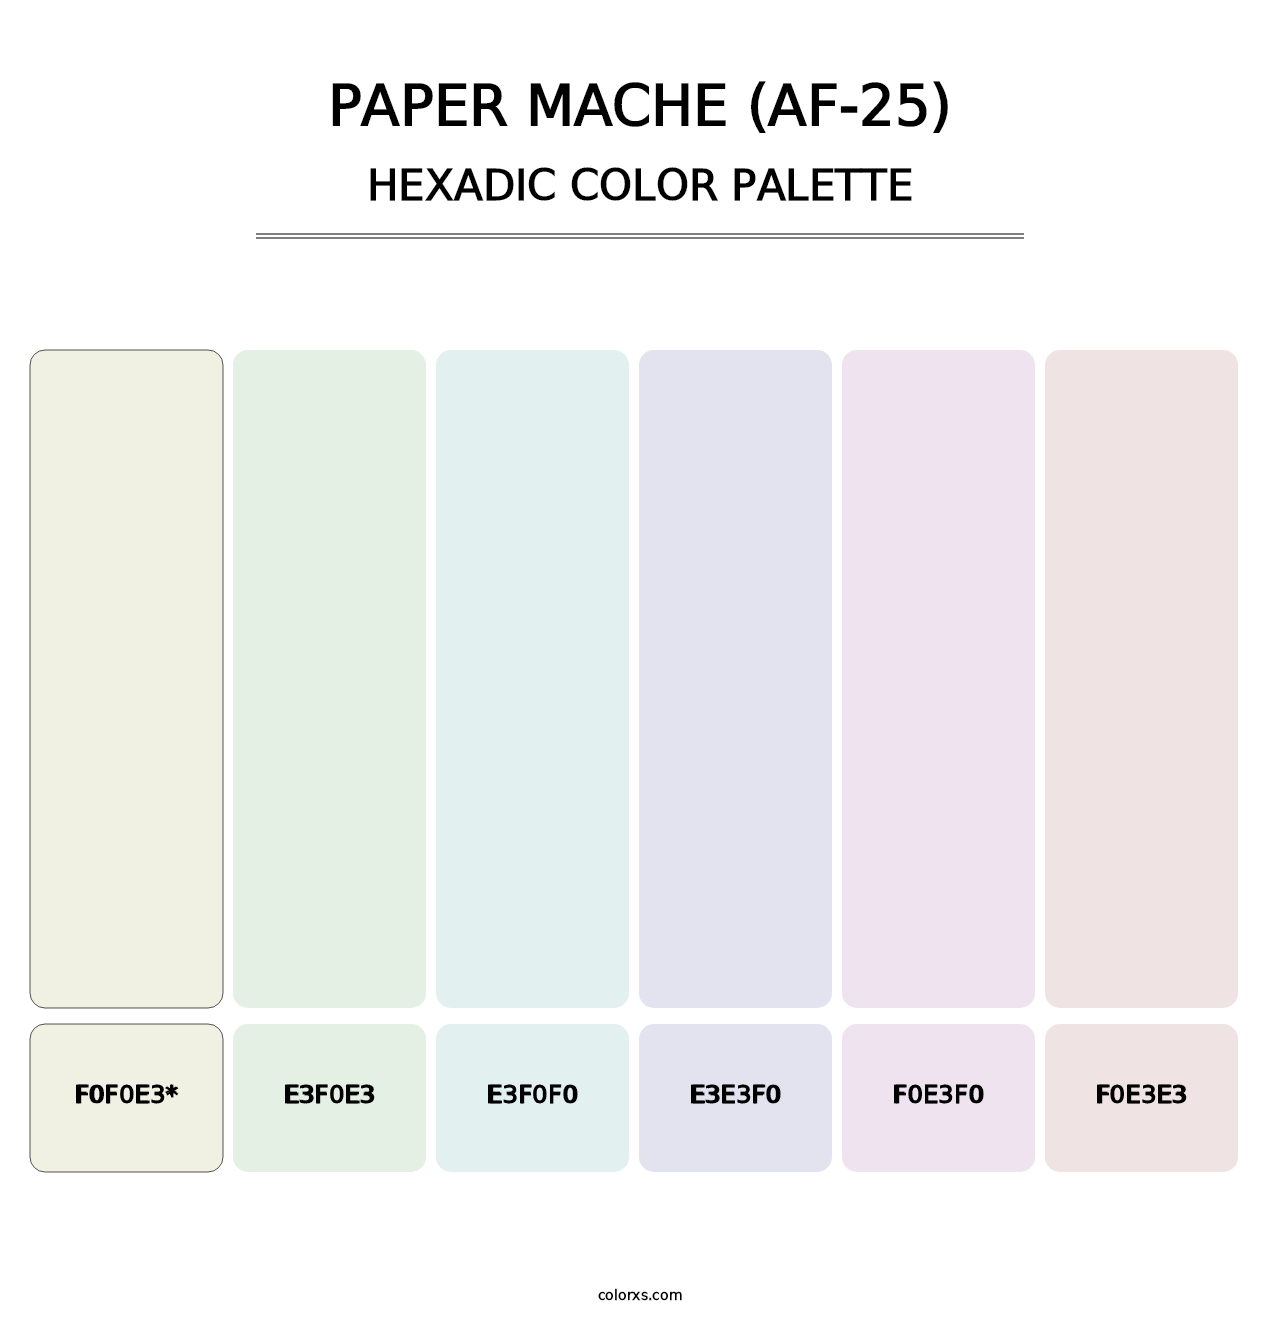 Paper Mache (AF-25) - Hexadic Color Palette